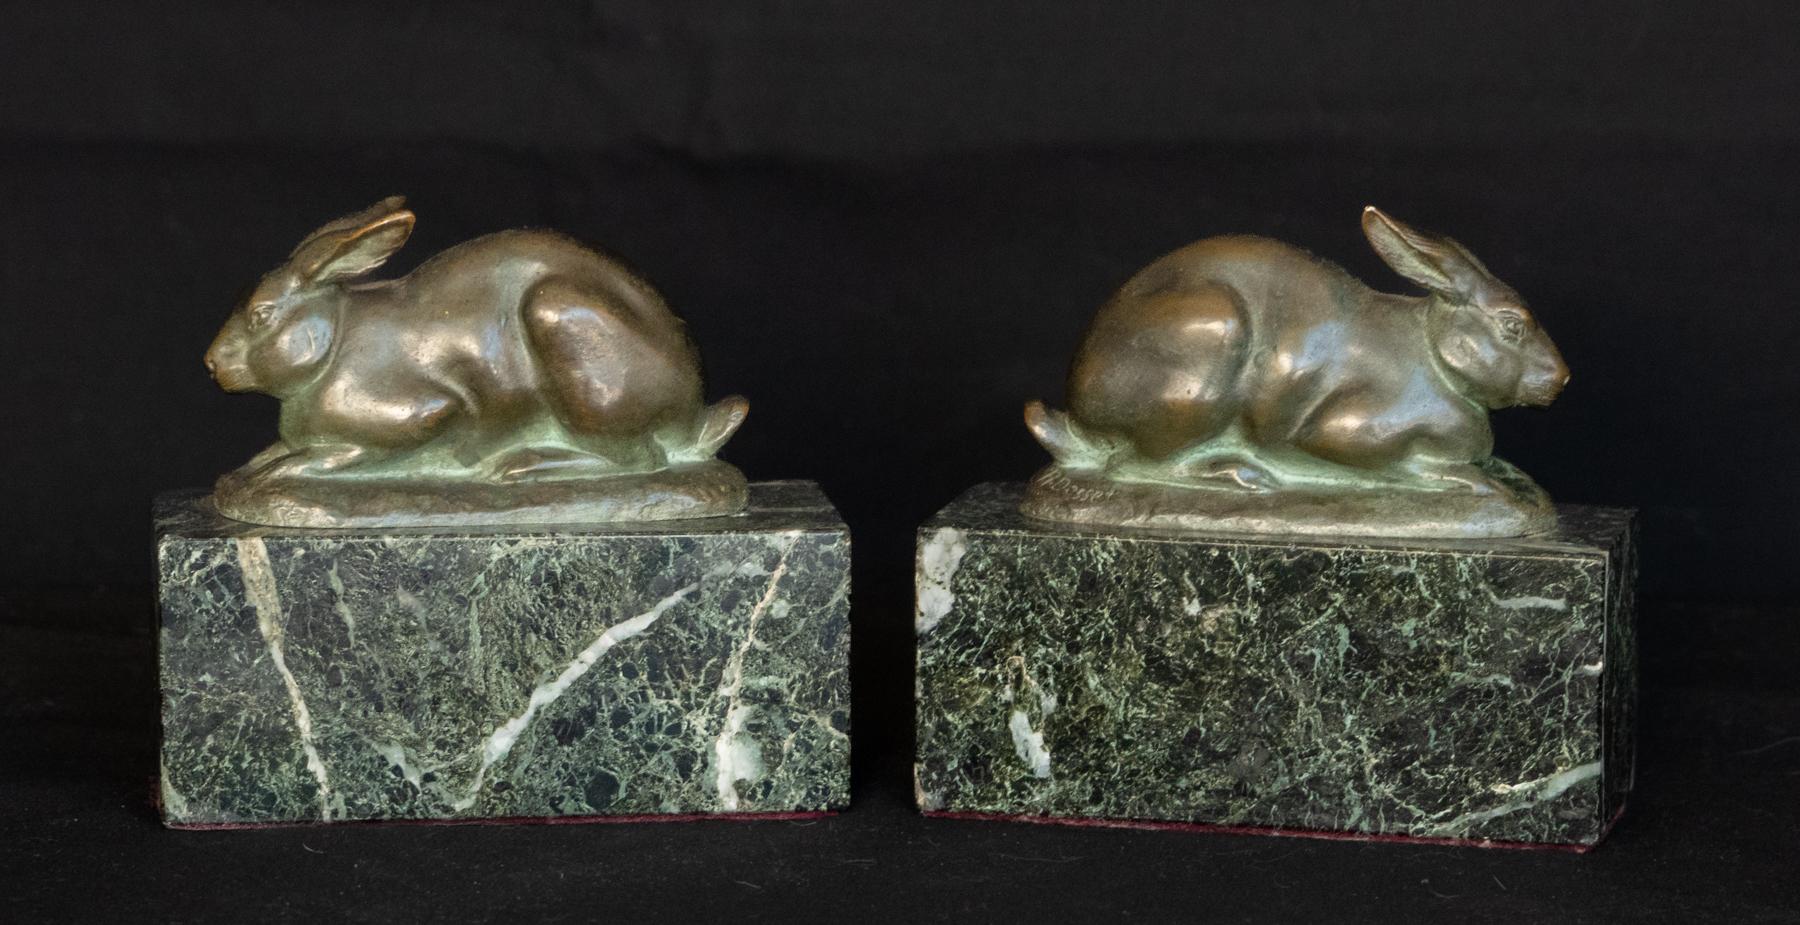 Paire de lapins en bronze autrichien Art Déco signés R. Desset
Chaque lapin est monté sur un bloc de marbre serpentin vert panaché.
Les lapins sont représentés dans des poses différentes. Le bronze vert vert naturel s'harmonise avec les bases en